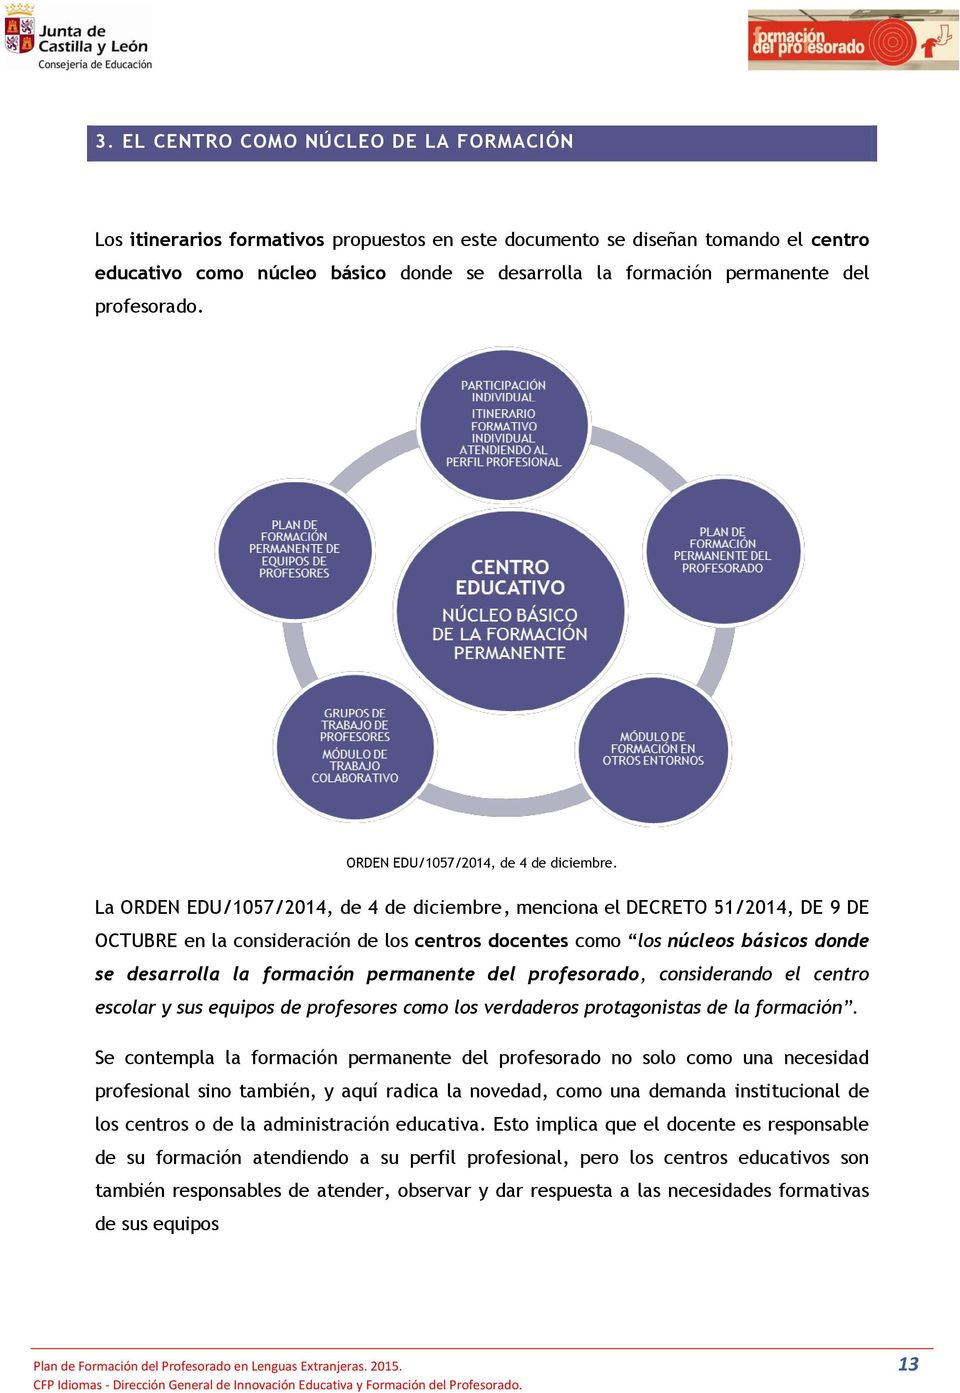 La ORDEN EDU/1057/2014, de 4 de diciembre, menciona el DECRETO 51/2014, DE 9 DE OCTUBRE en la consideración de los centros docentes como los núcleos básicos donde se desarrolla la formación